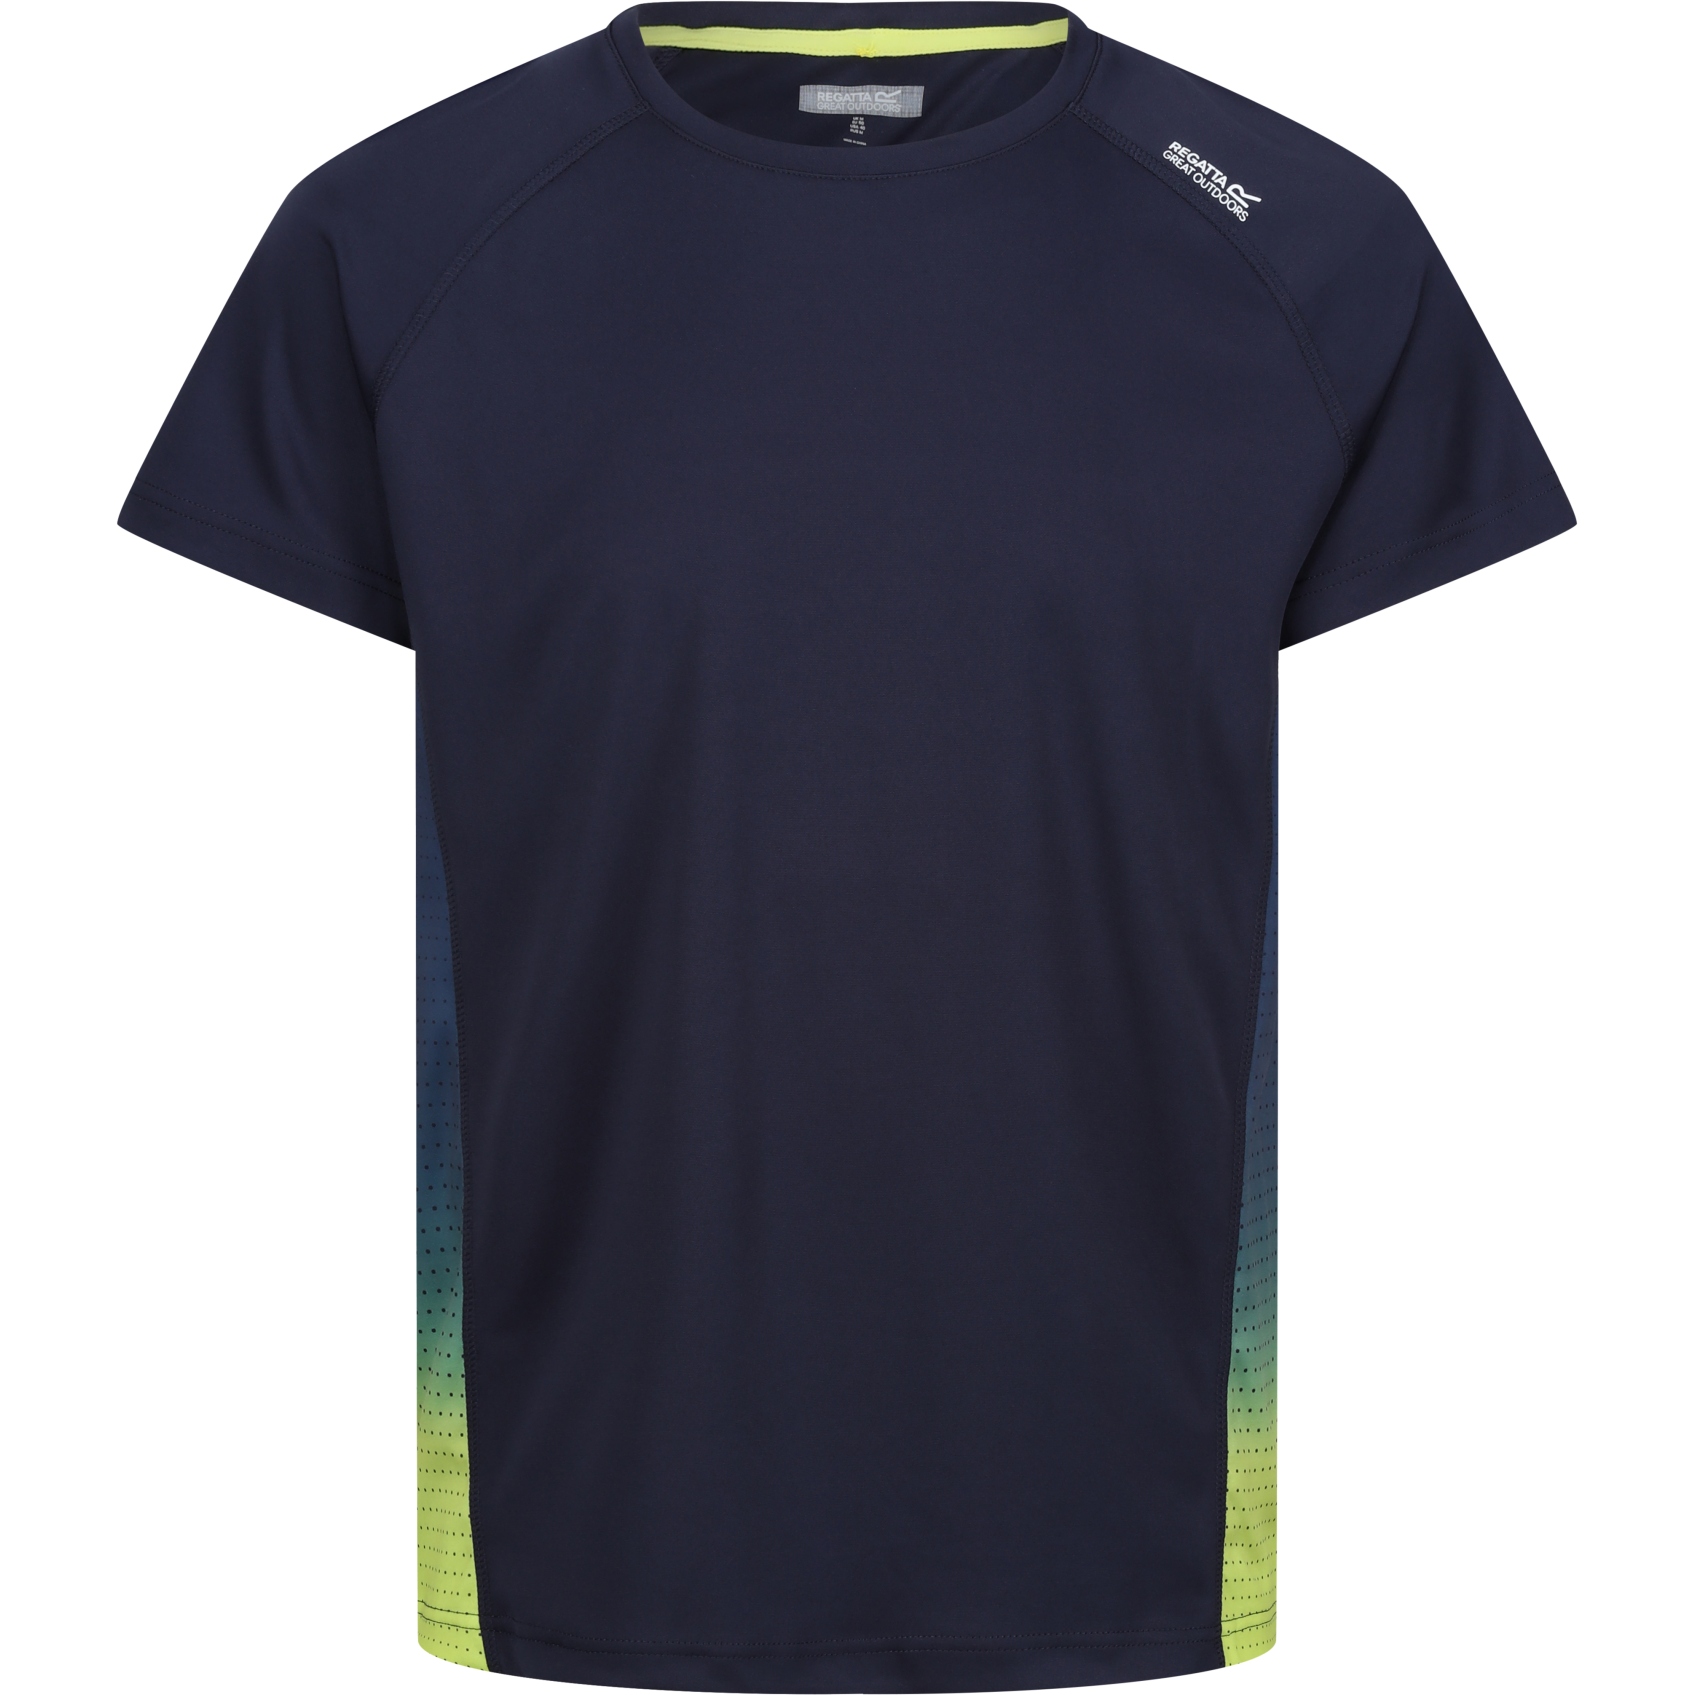 Produktbild von Regatta Corballis T-Shirt Herren - Navy/Citron Lime HS2